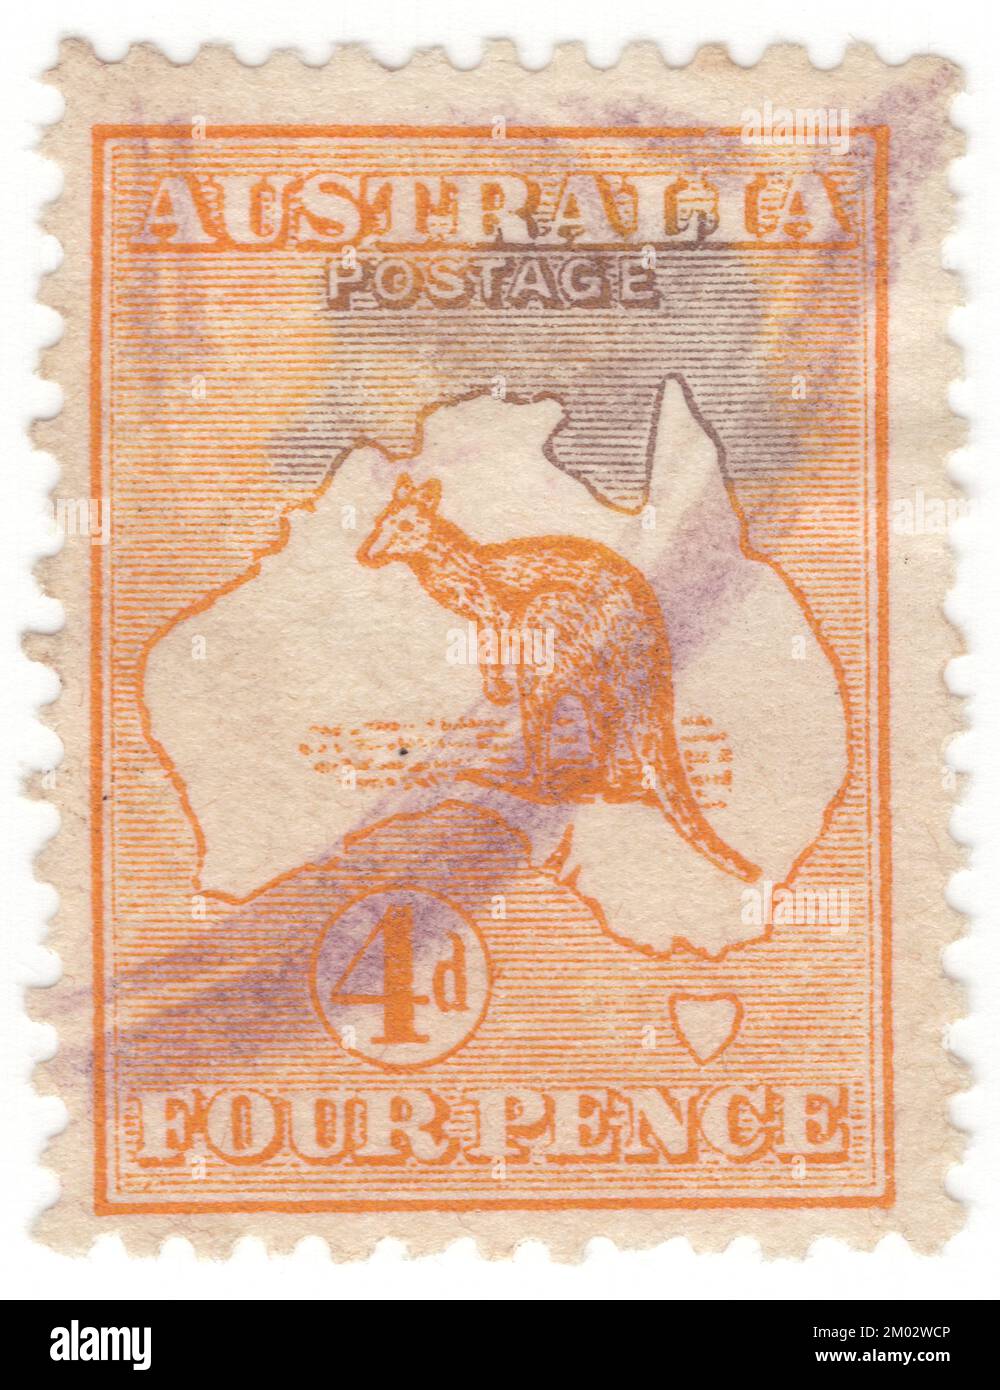 AUSTRALIEN — 1913: Orangefarbener Briefmarken mit 4 Pences, der ein Känguru und eine Karte Australiens darstellt. Australien ist der älteste, flachste und trockenste bewohnte Kontinent mit den am wenigsten fruchtbaren Böden. Es ist ein megaweites Land und seine Größe verleiht ihm eine große Vielfalt an Landschaften und Klimabedingungen, mit Wüsten im Zentrum, tropischen Regenwäldern im Nordosten und Bergketten im Südosten. Das Känguru ist ein bekanntes Symbol Australiens. Erste Ausgabe von australischen Briefmarken. Das Känguru und die ewu sind auf dem australischen Wappen zu sehen Stockfoto